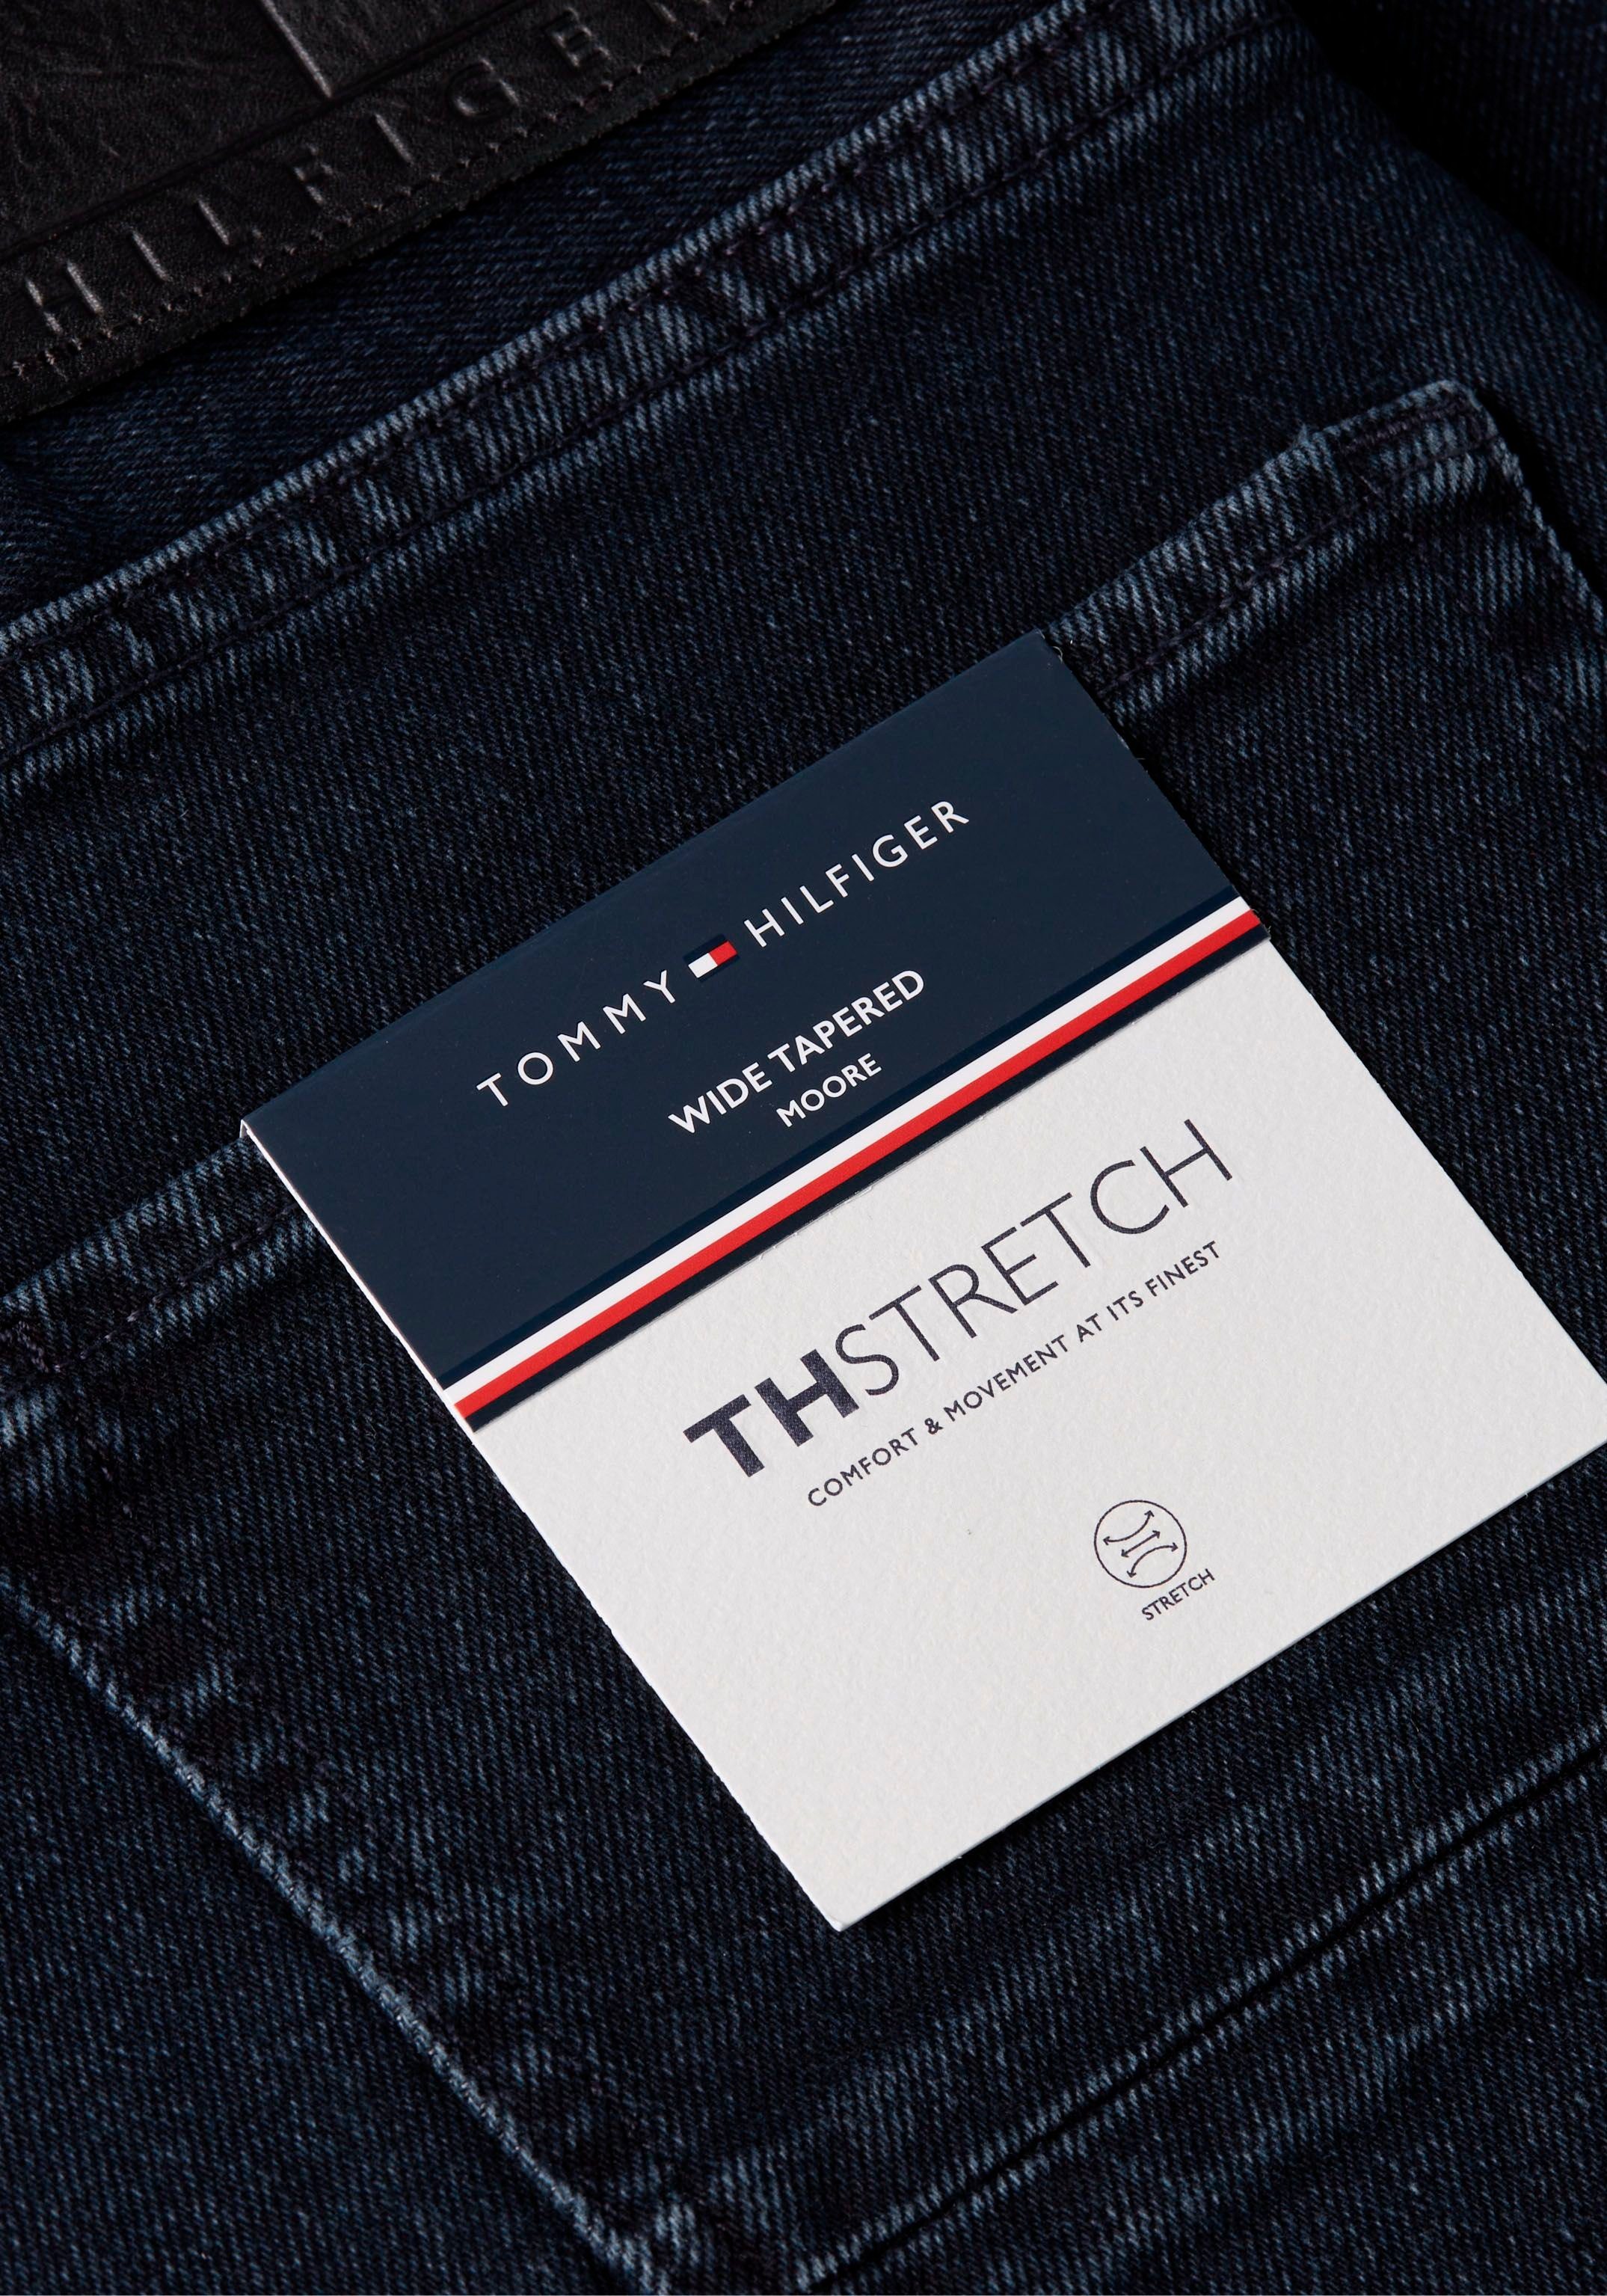 ESCO TAPERED MOORE STR Hilfiger Tapered-fit-Jeans Fade-Effekt BLUEBLK Tommy mit